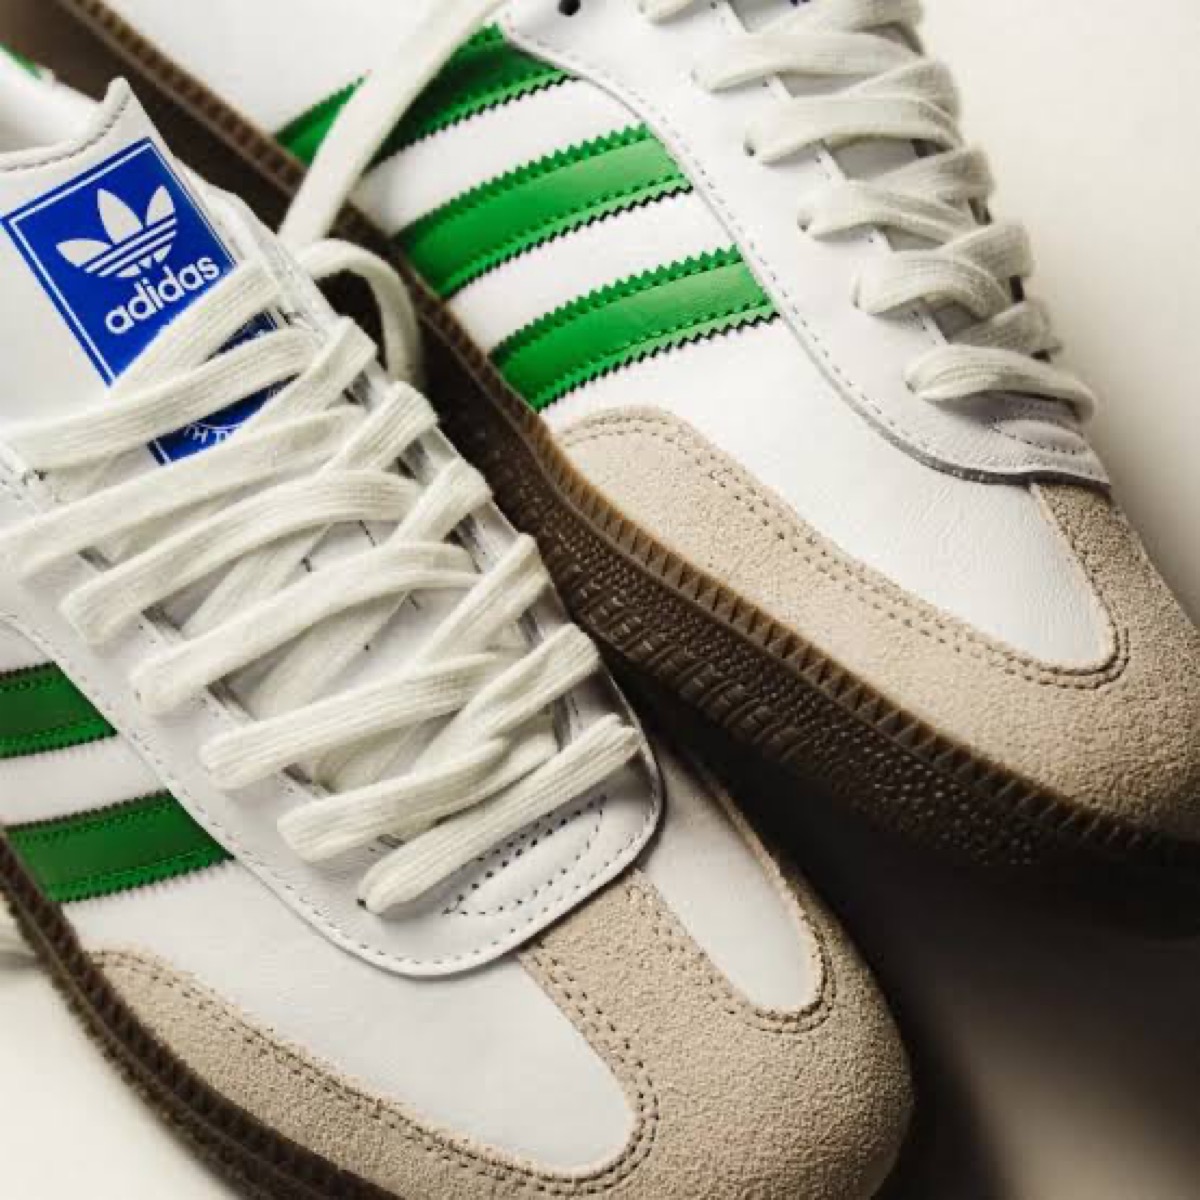 adidas Samba OG “Footwear White/Green”